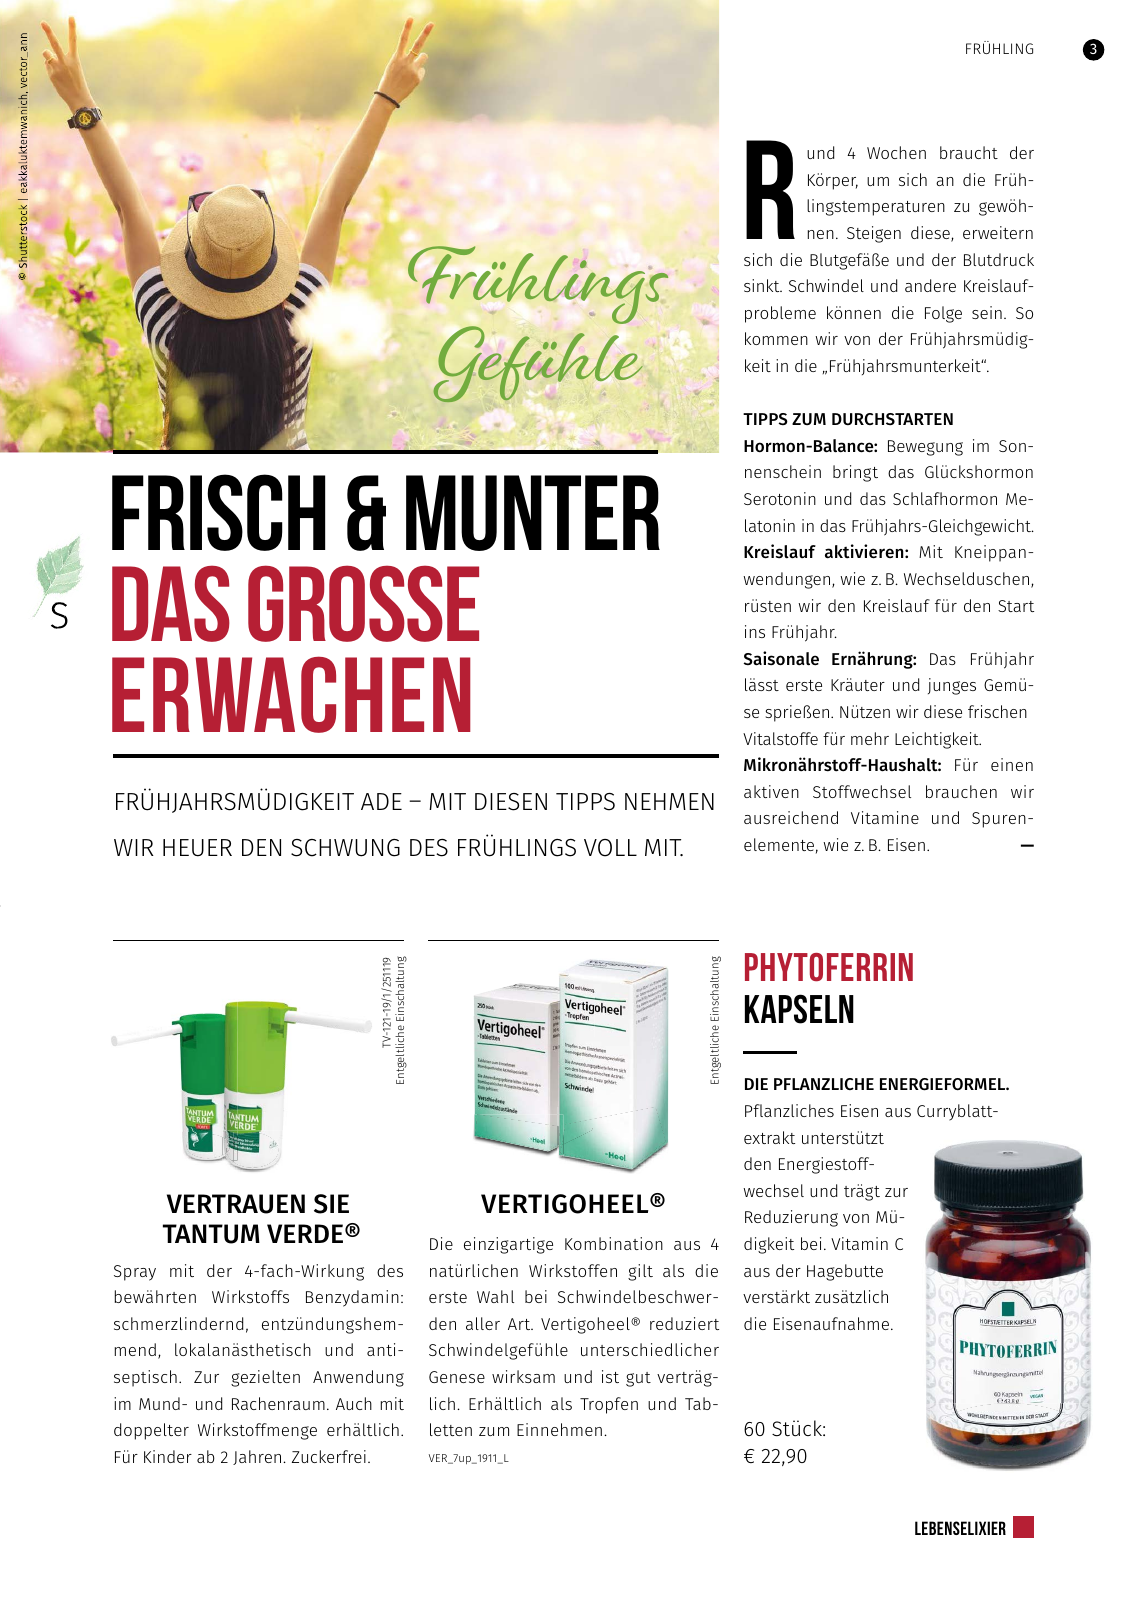 Vorschau Hofstaetter-Apotheke Lebenselixier Frühling 2020 Seite 3